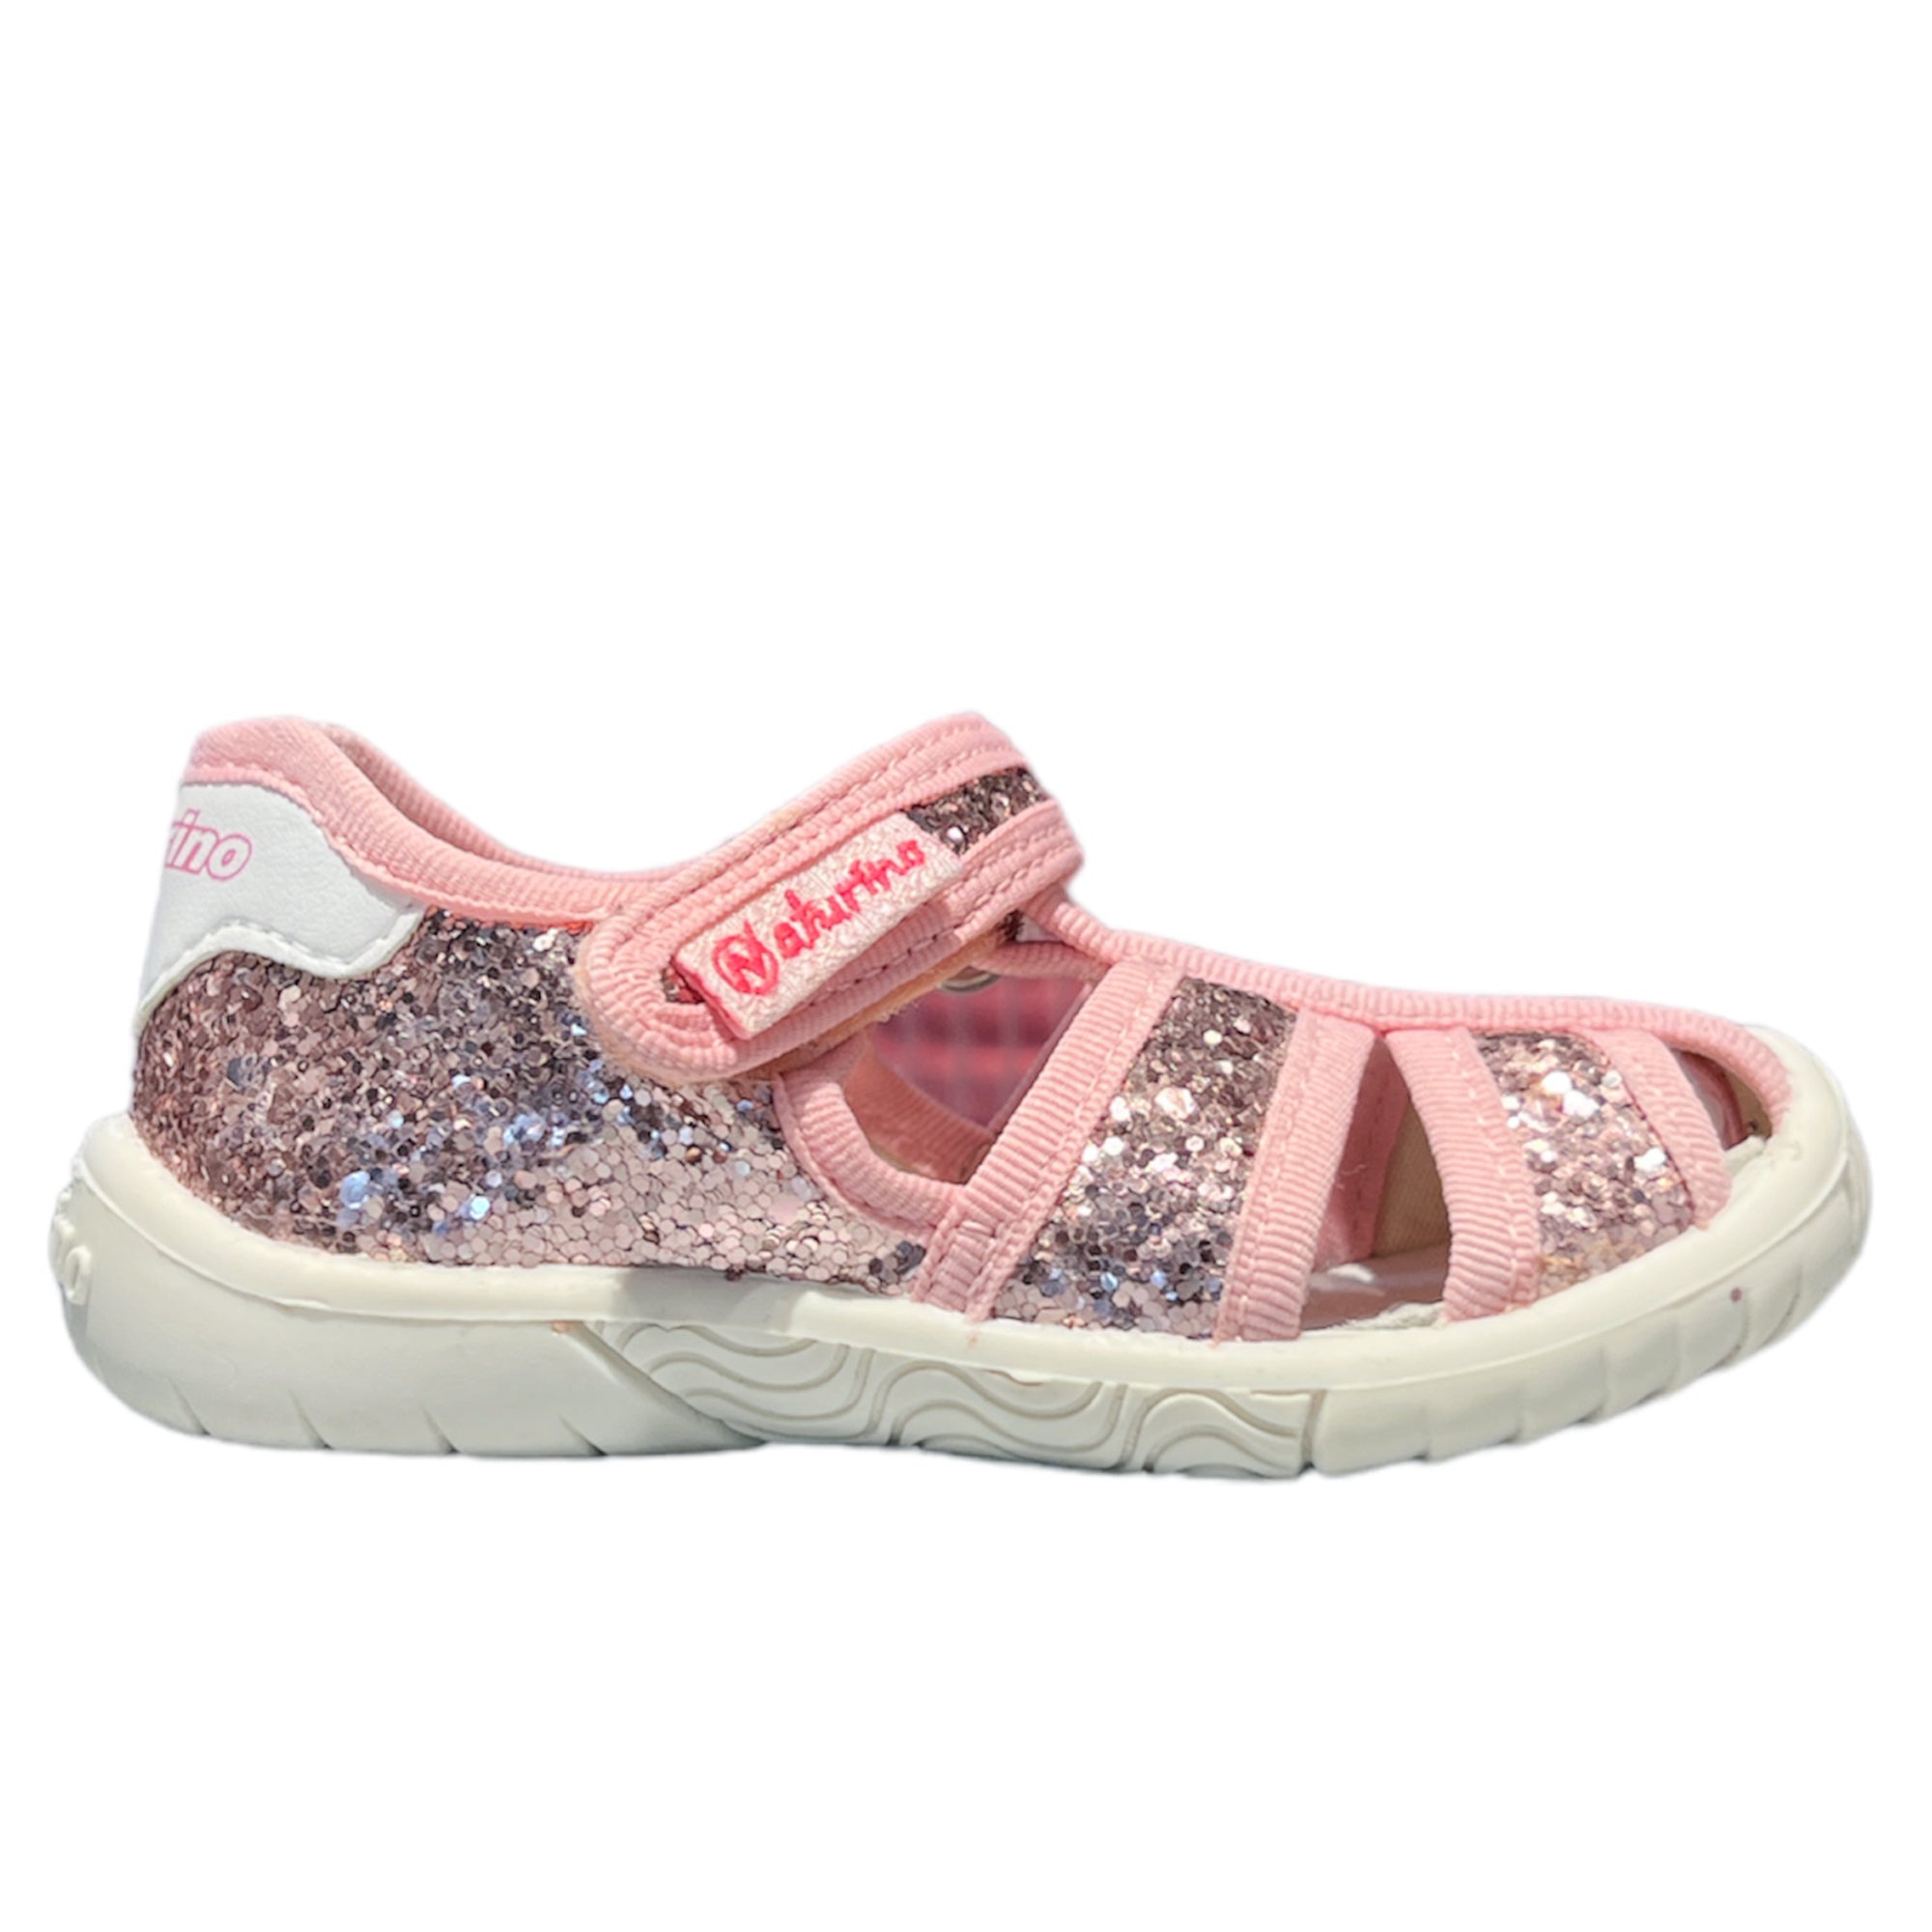 Naturino Baby Girls USA Sport Sandals